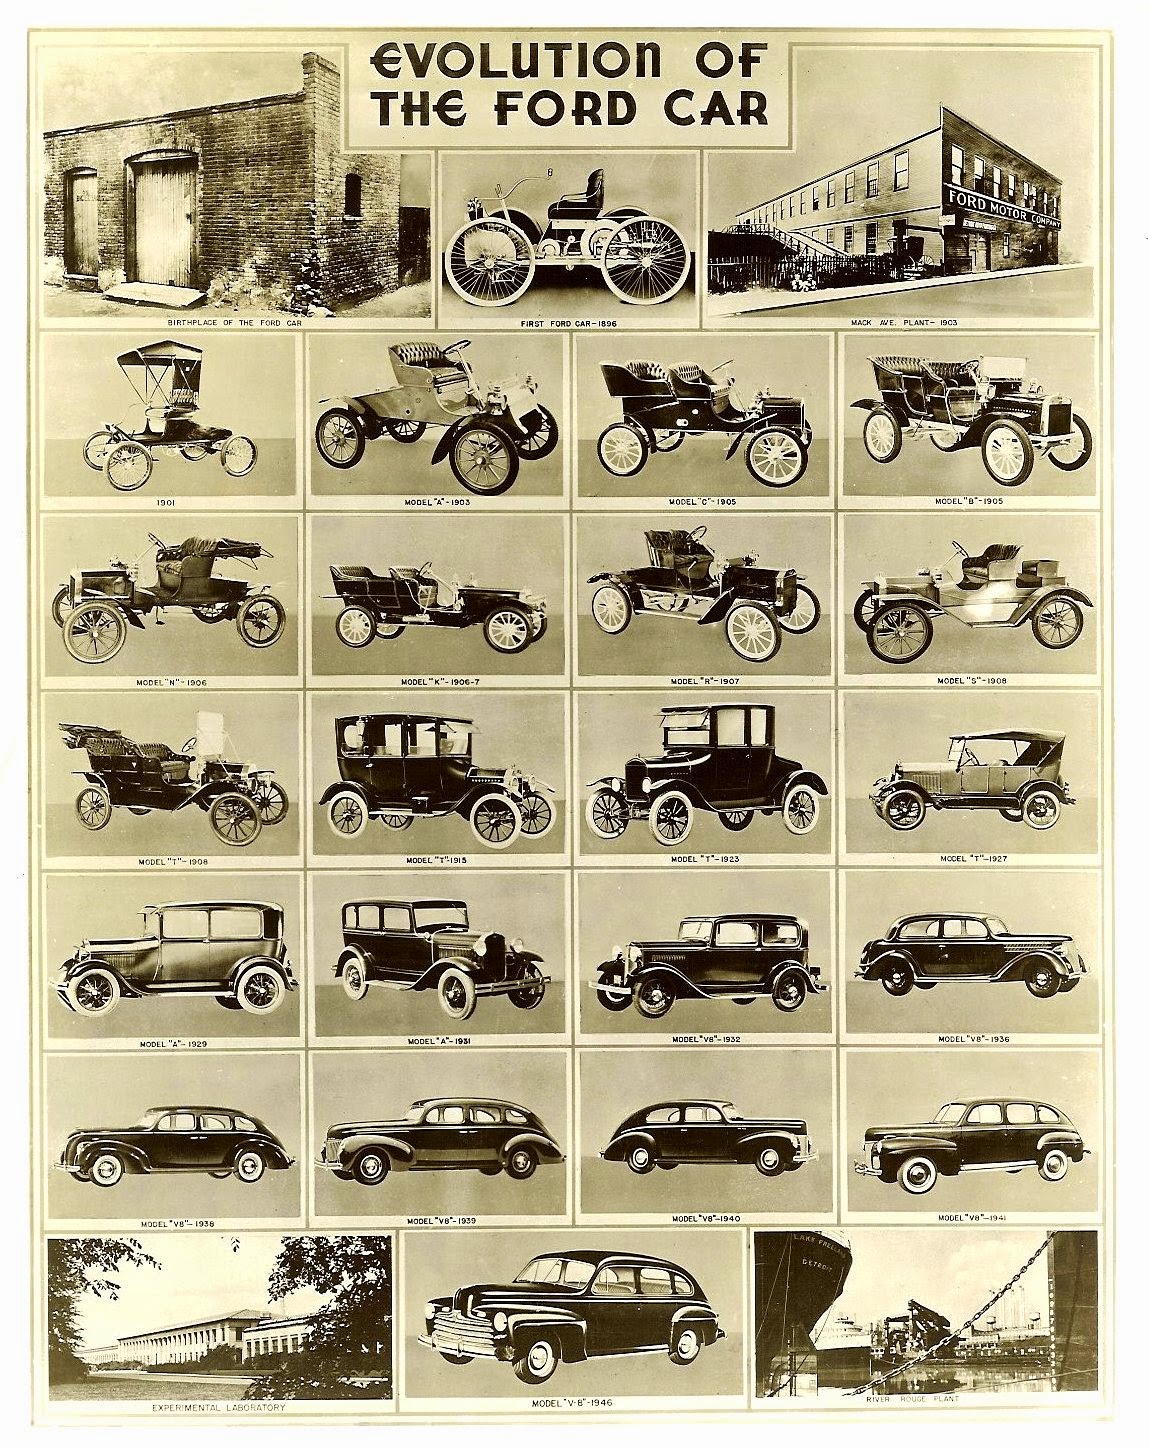 Evolución de los coches Ford desde 1896 hasta 1946